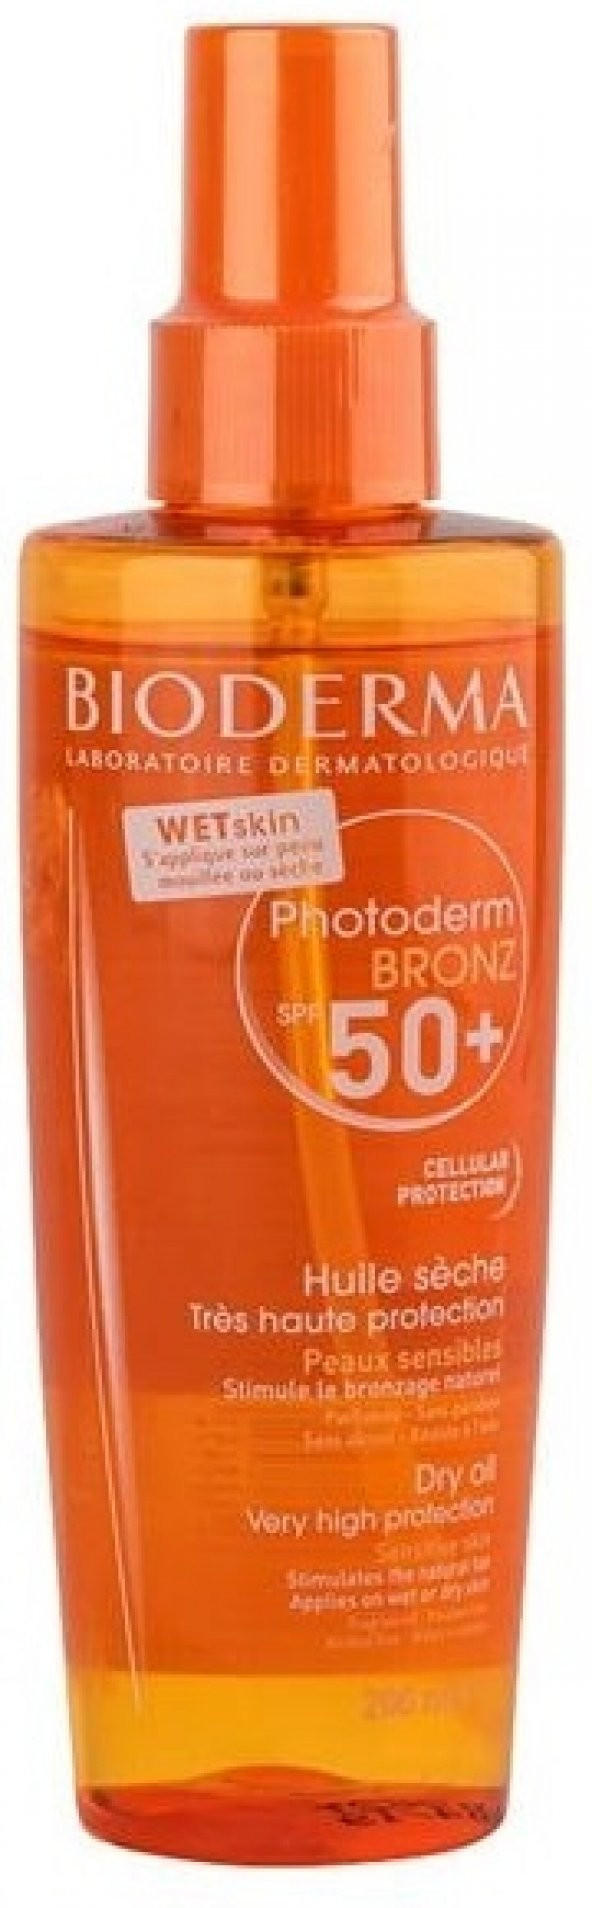 Bioderma Photoderm Bronz Brume Dry Oil Spf 50+ 200 ml skt:01/2020